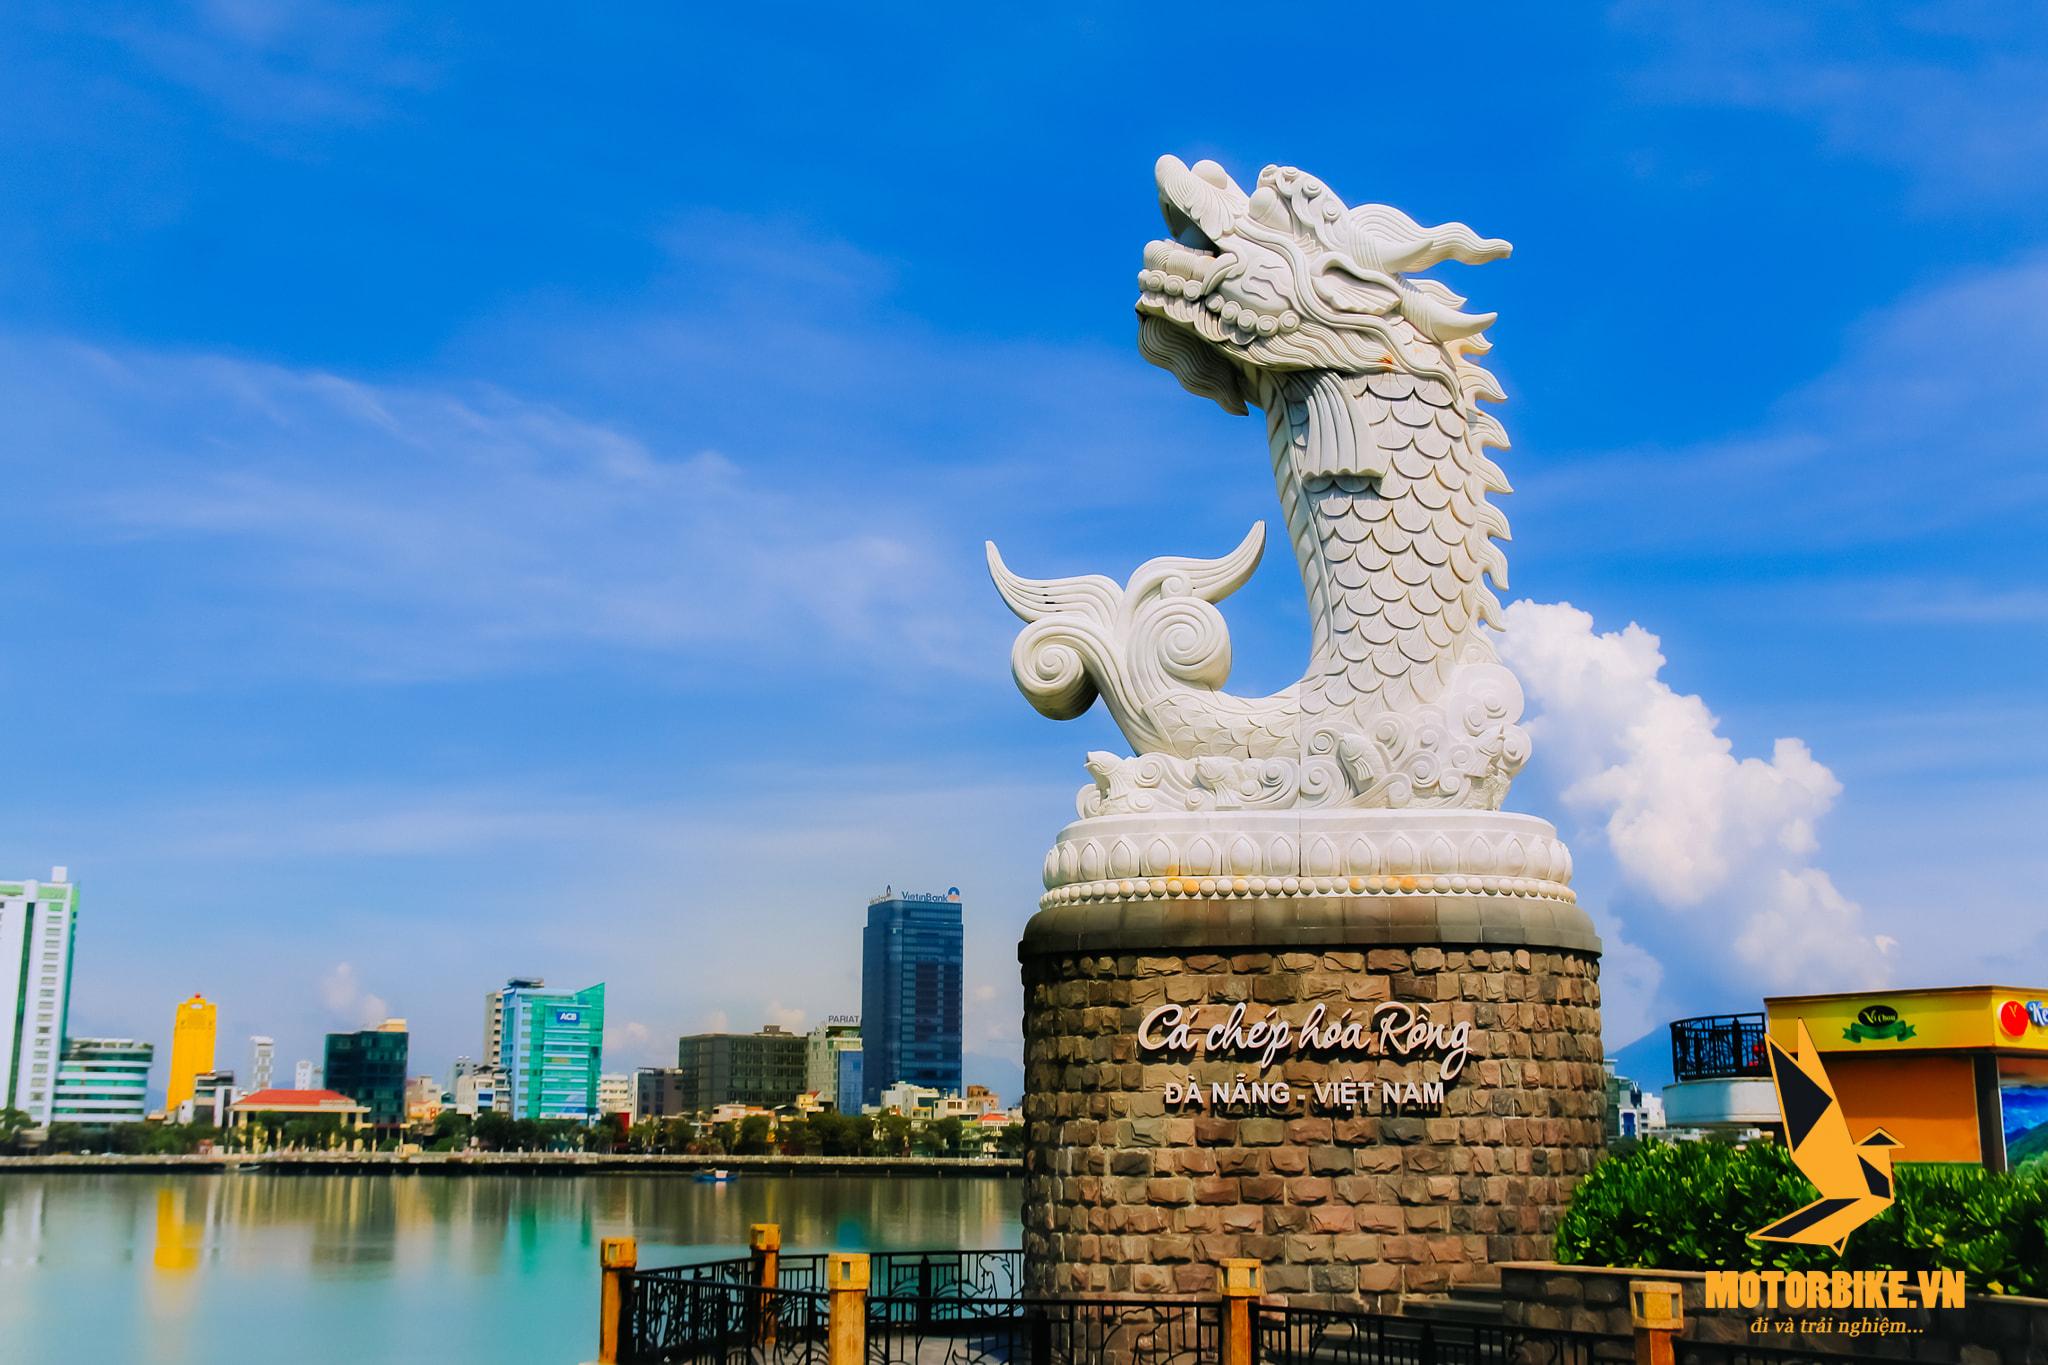 Cá chép hóa rồng biểu tượng mới của Đà Nẵng